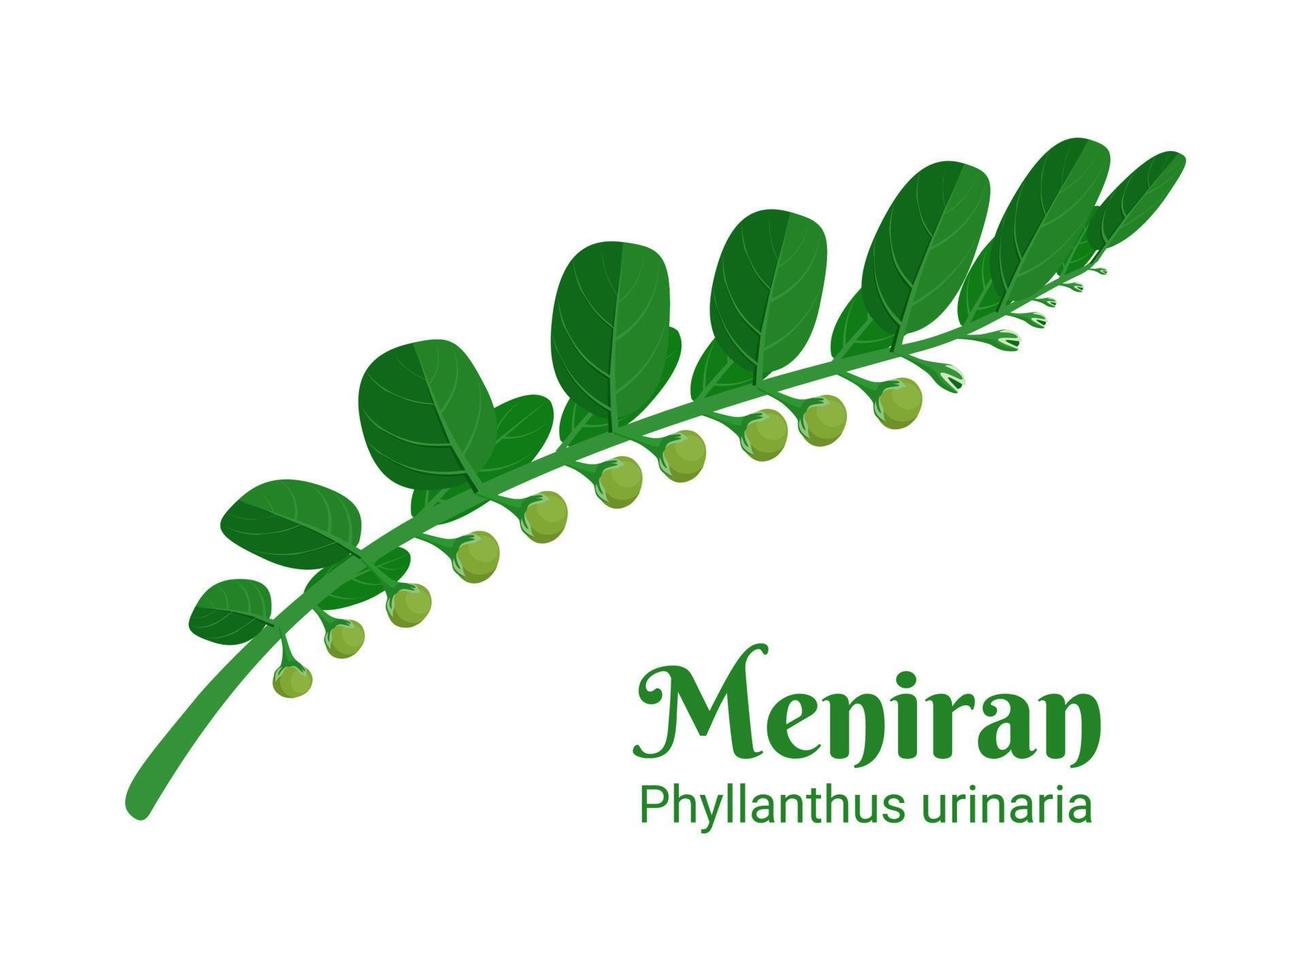 illustrazione vettoriale, meniran o phyllanthus urinaria, è una pianta arbustiva usata come erba medicinale in asia. vettore